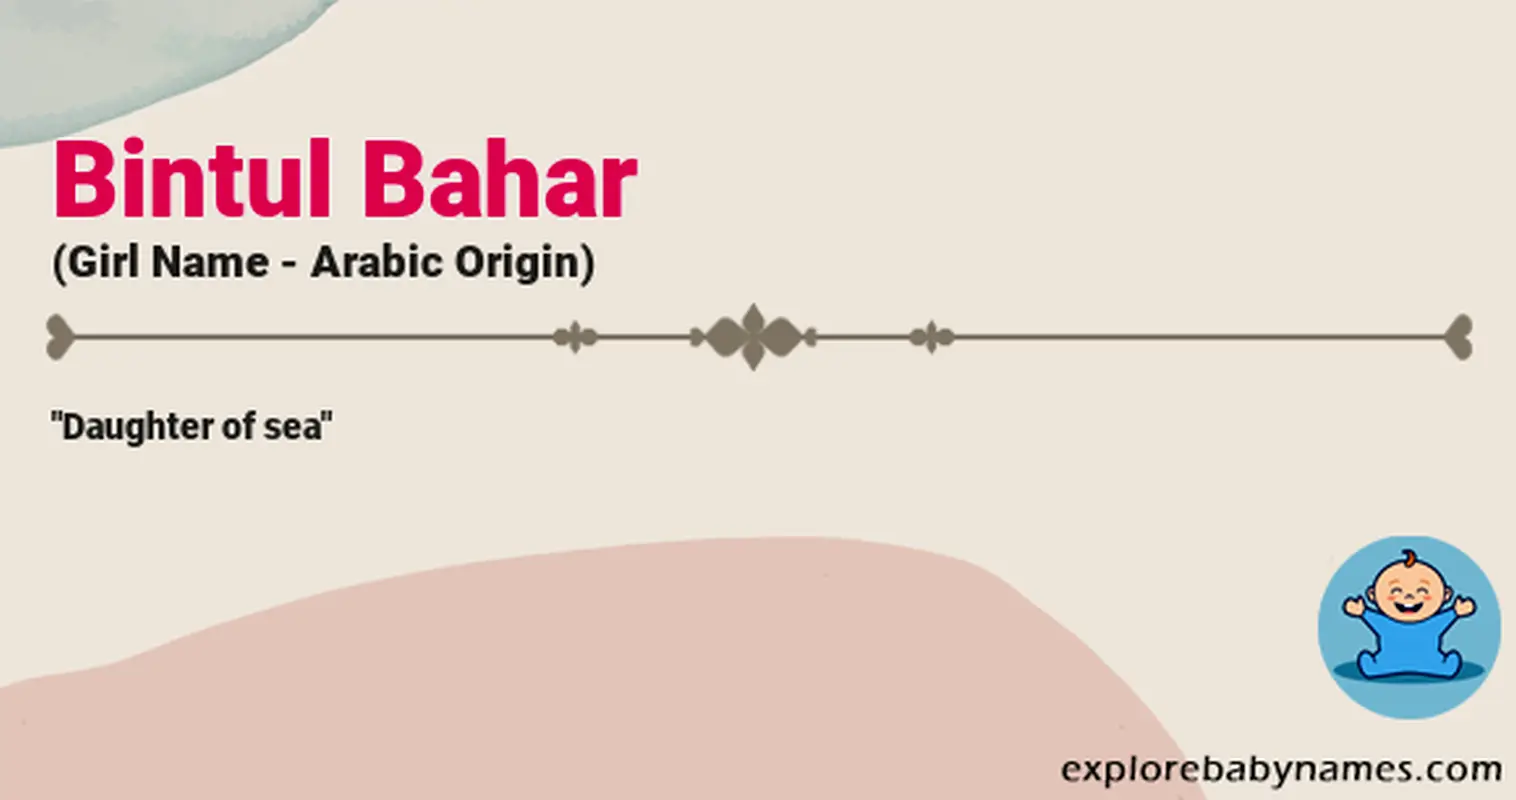 Meaning of Bintul Bahar